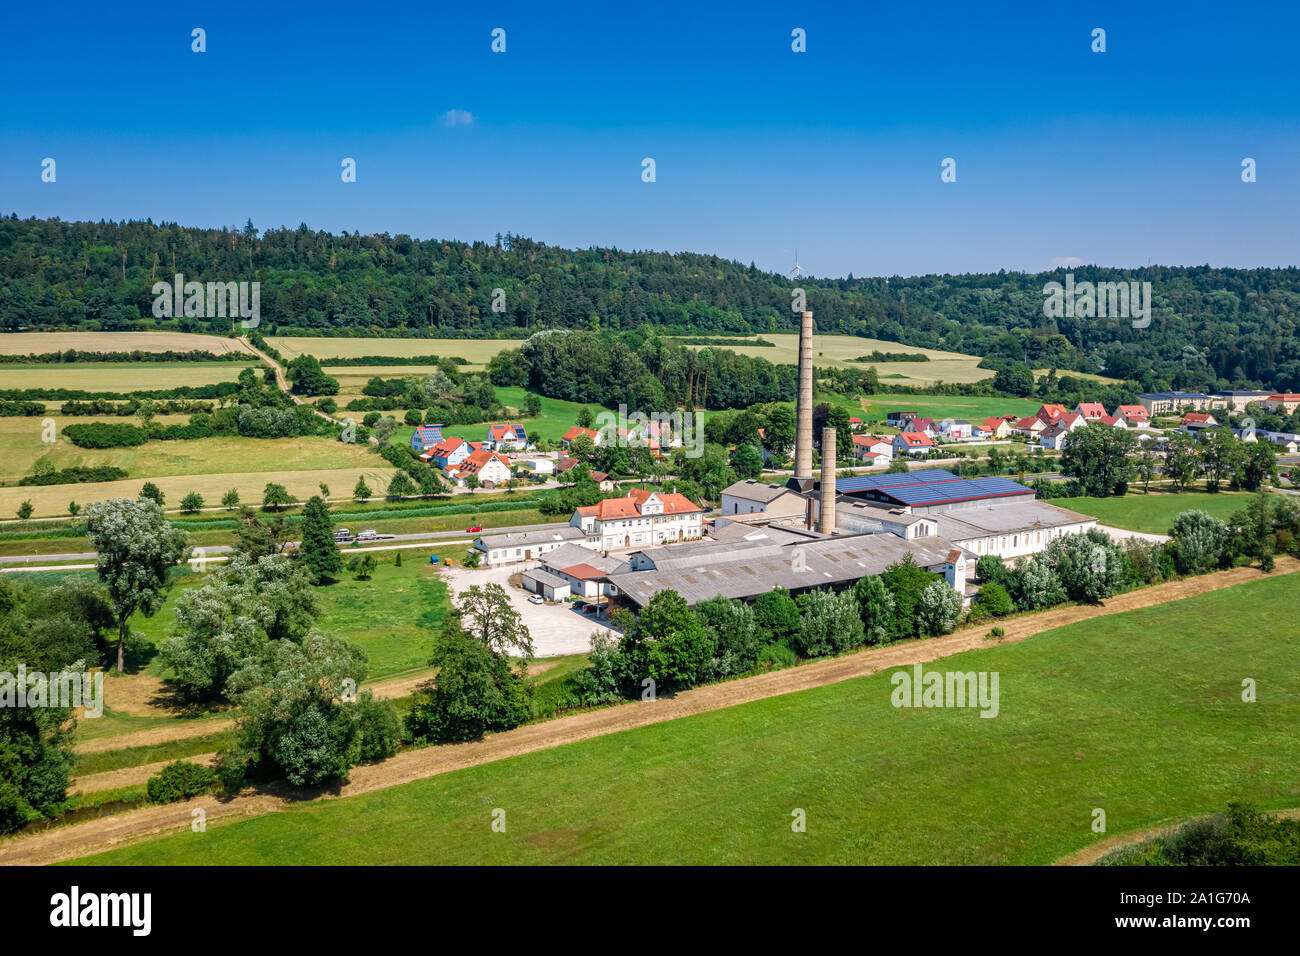 Vista aérea de una zona histórica de tejidos llamada Flachsröste Berching, Bayern, Alemania Foto de stock